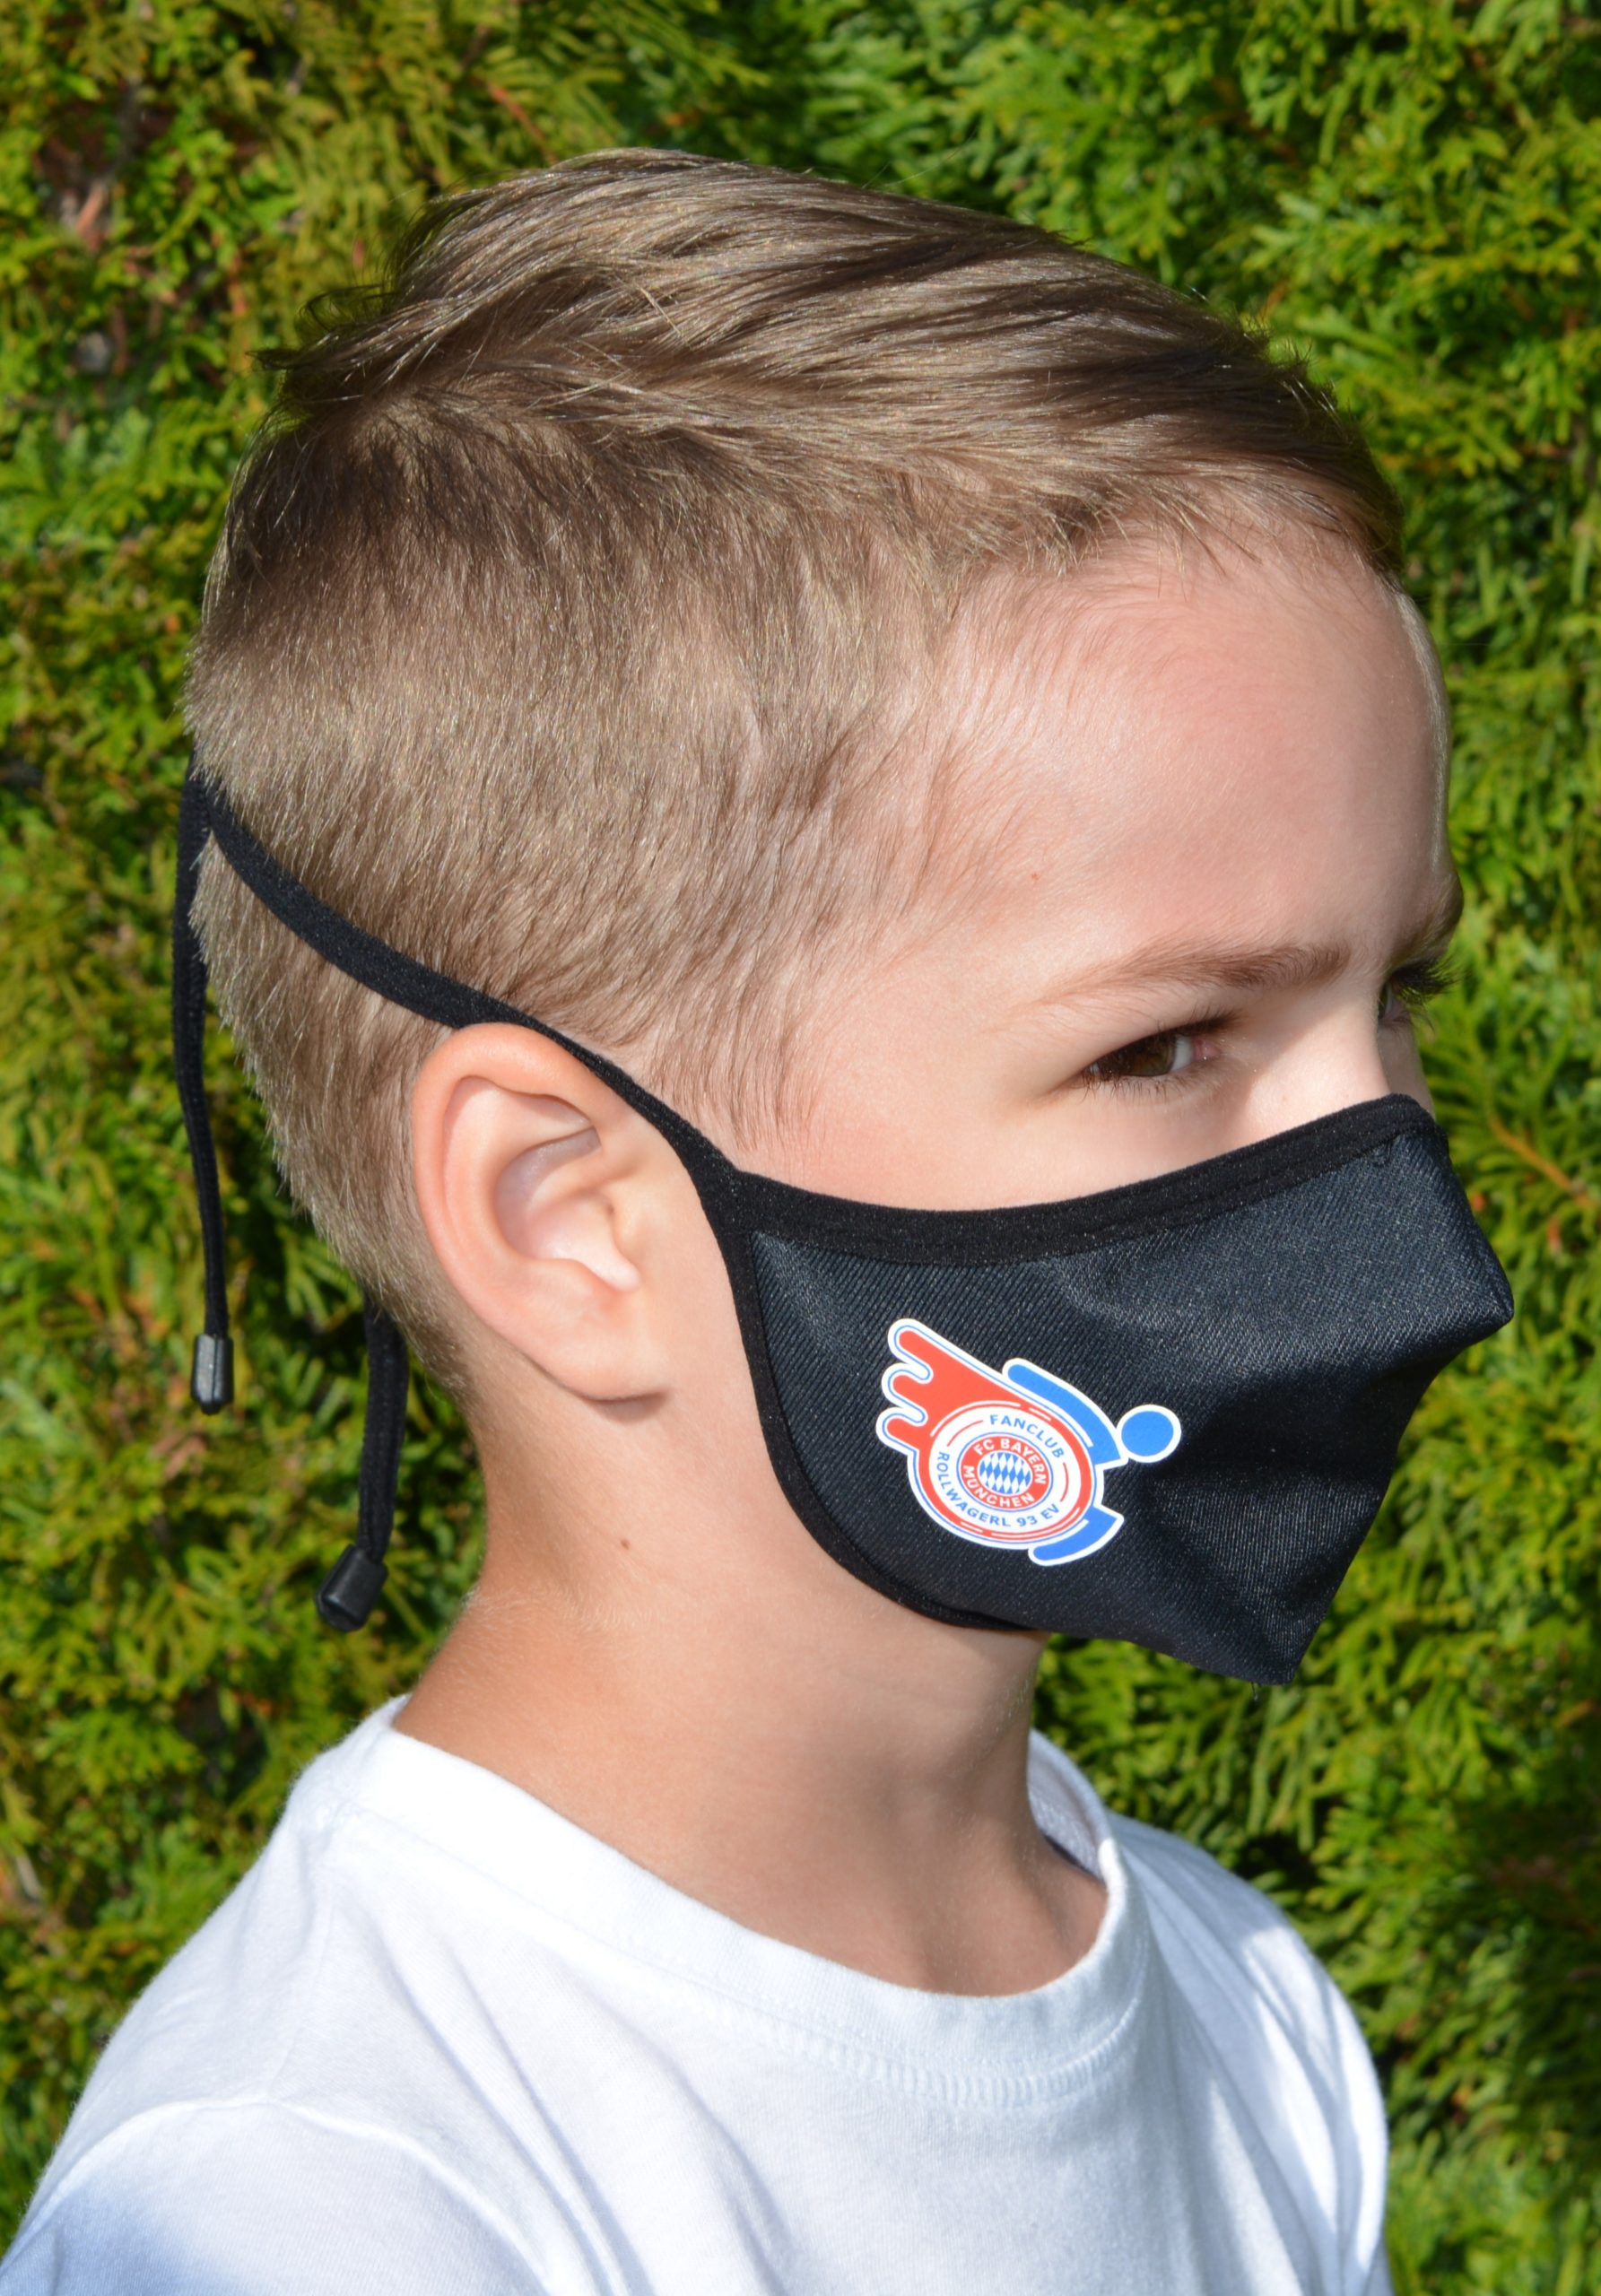 Kind mit Mund-Nasenschutz mit Rollwagerl-Logo in schwarz